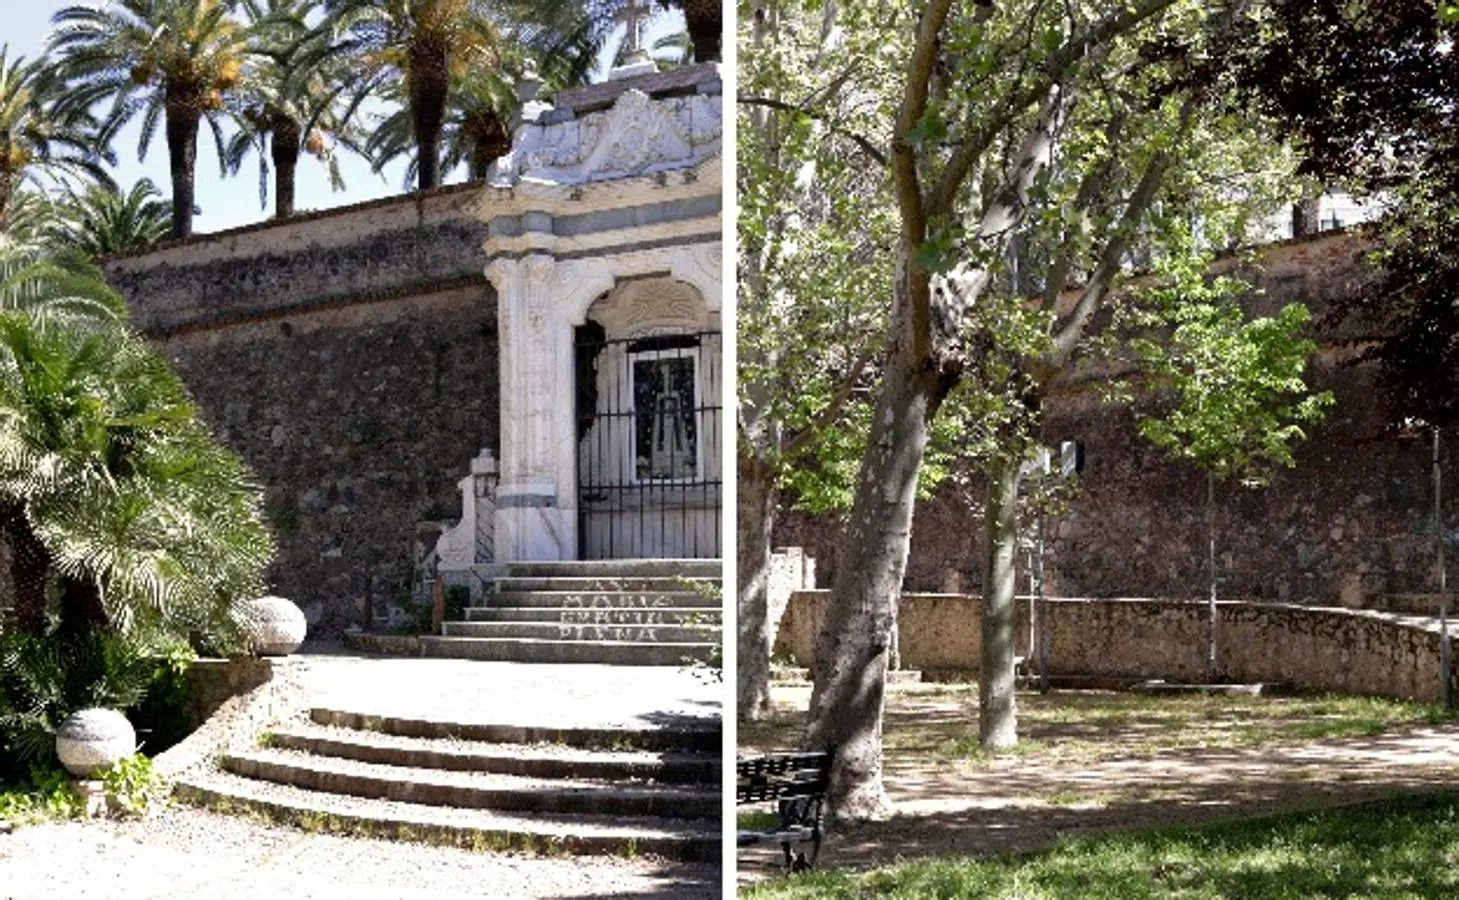 El parque infantil cuenta con el auditorio Ricardo Carapeto y un monumento dedicado a la Virgen de la Soledad.